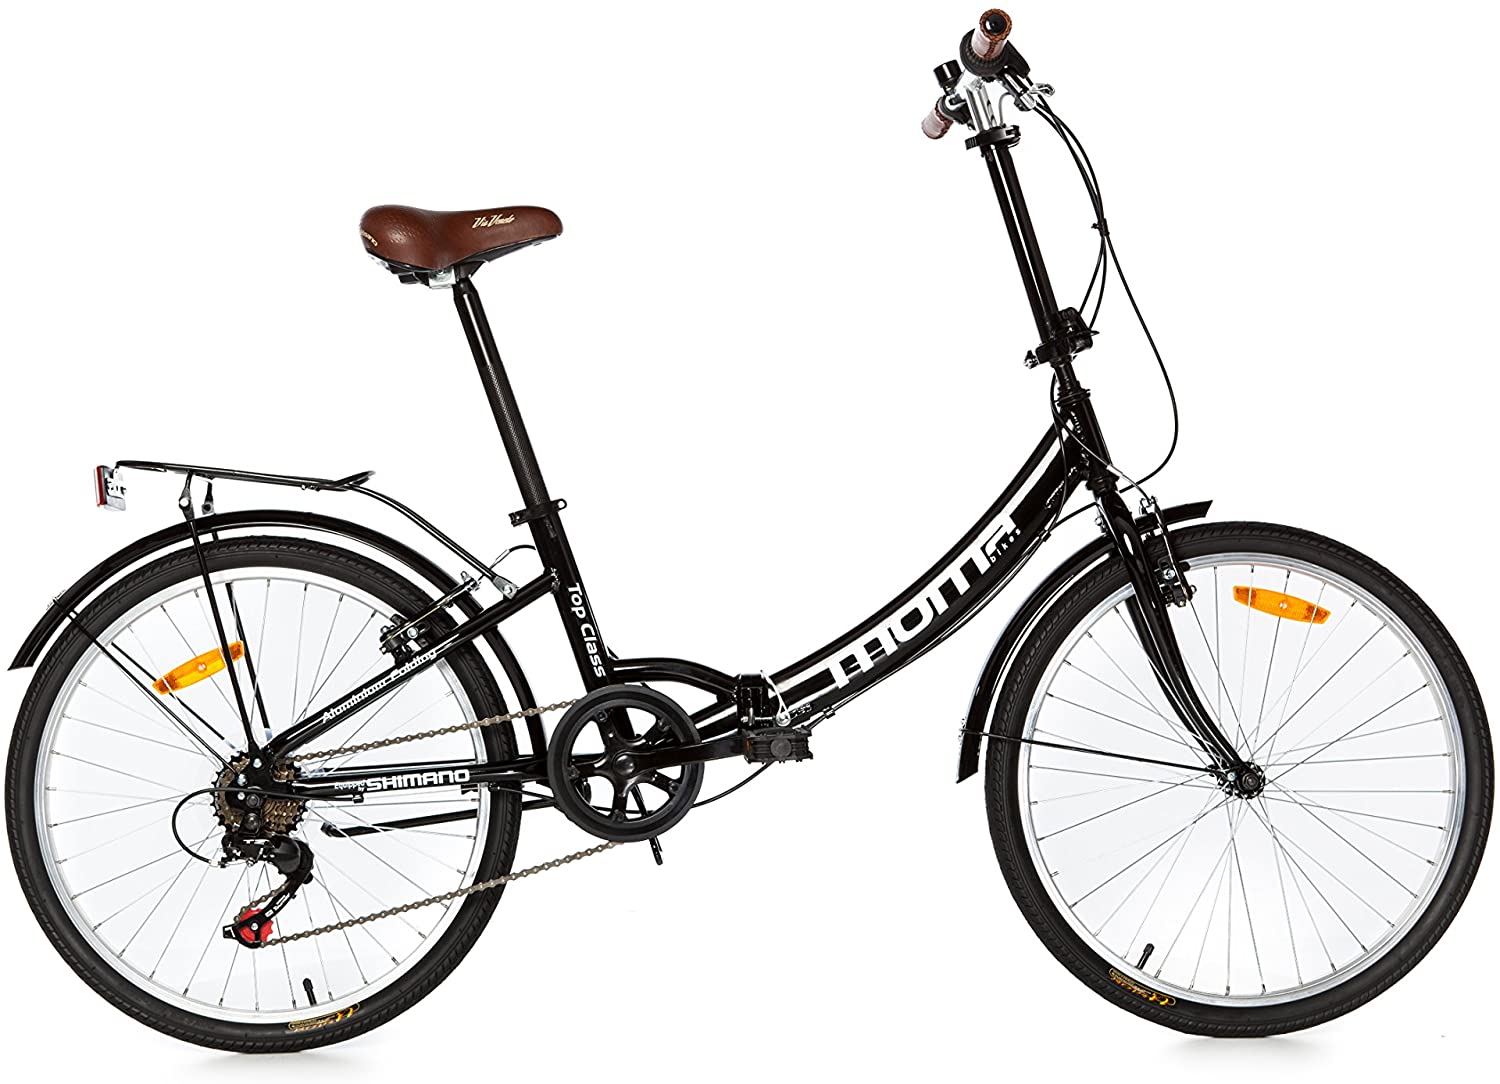  Moma Bikes Top Class 24 - Bicicleta Plegable Urbana, Cambio Shimano TZ-50 6 vel, Ruedas de 24″ con llantas de aluminio, color Negro 